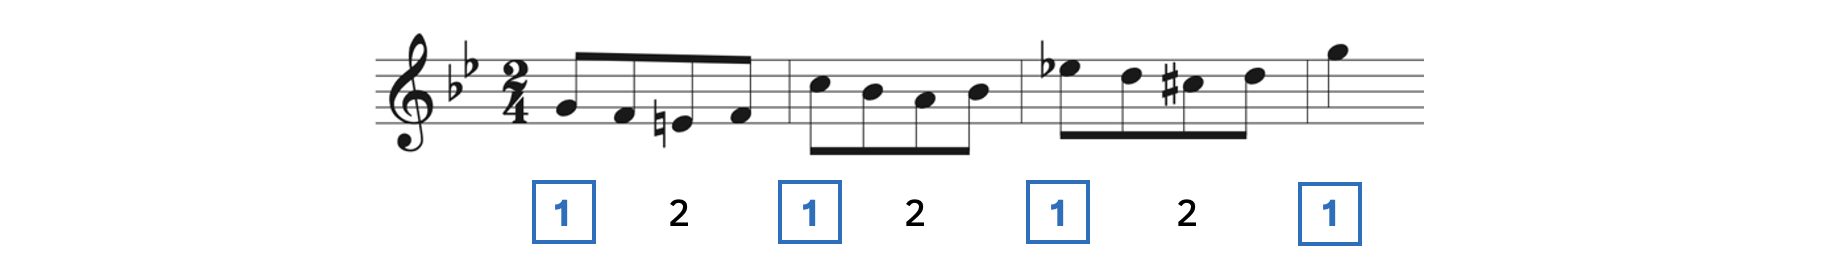 Two beats per measure in Strauss's Frulingsstimmen Waltz, Op. 410